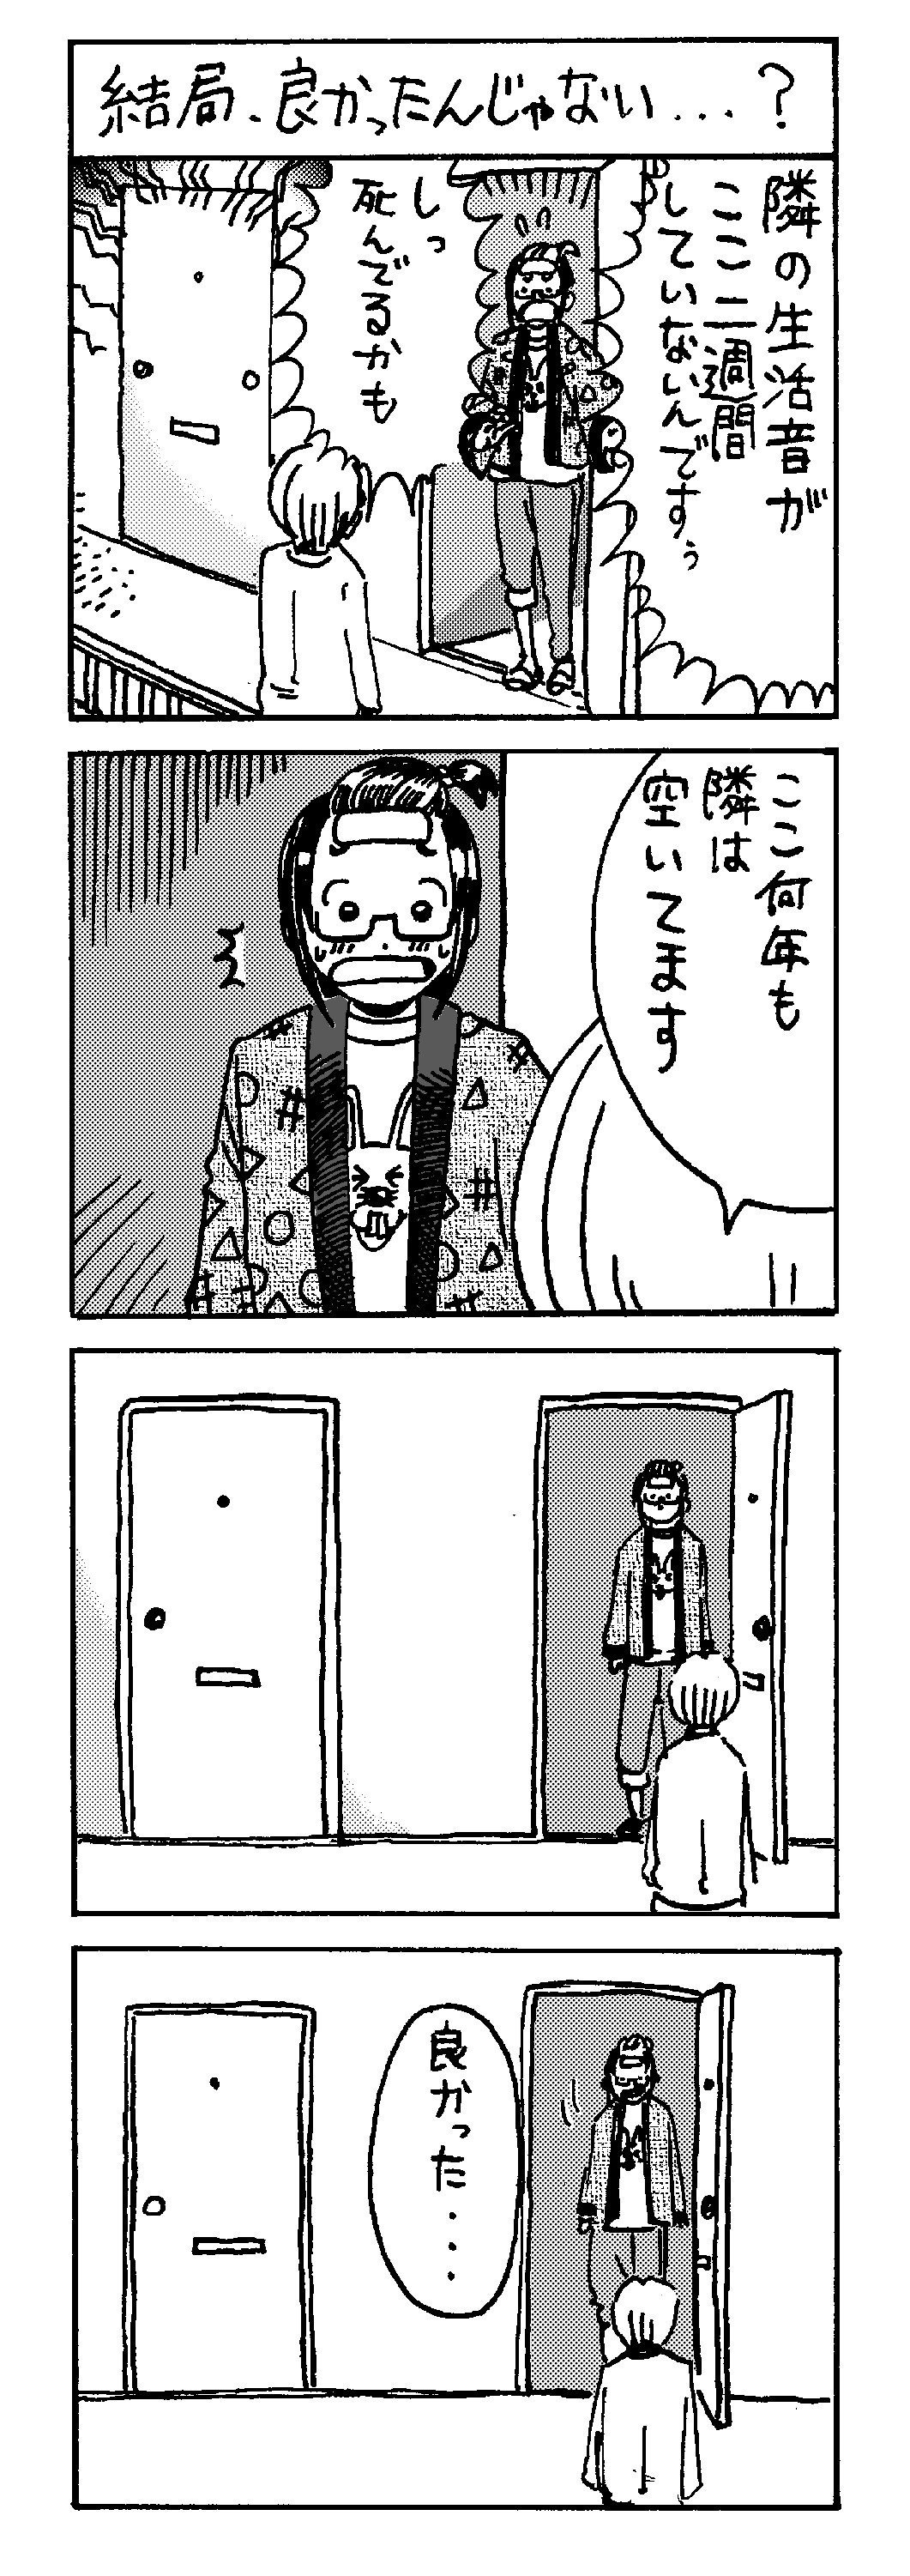 四コマ漫画01